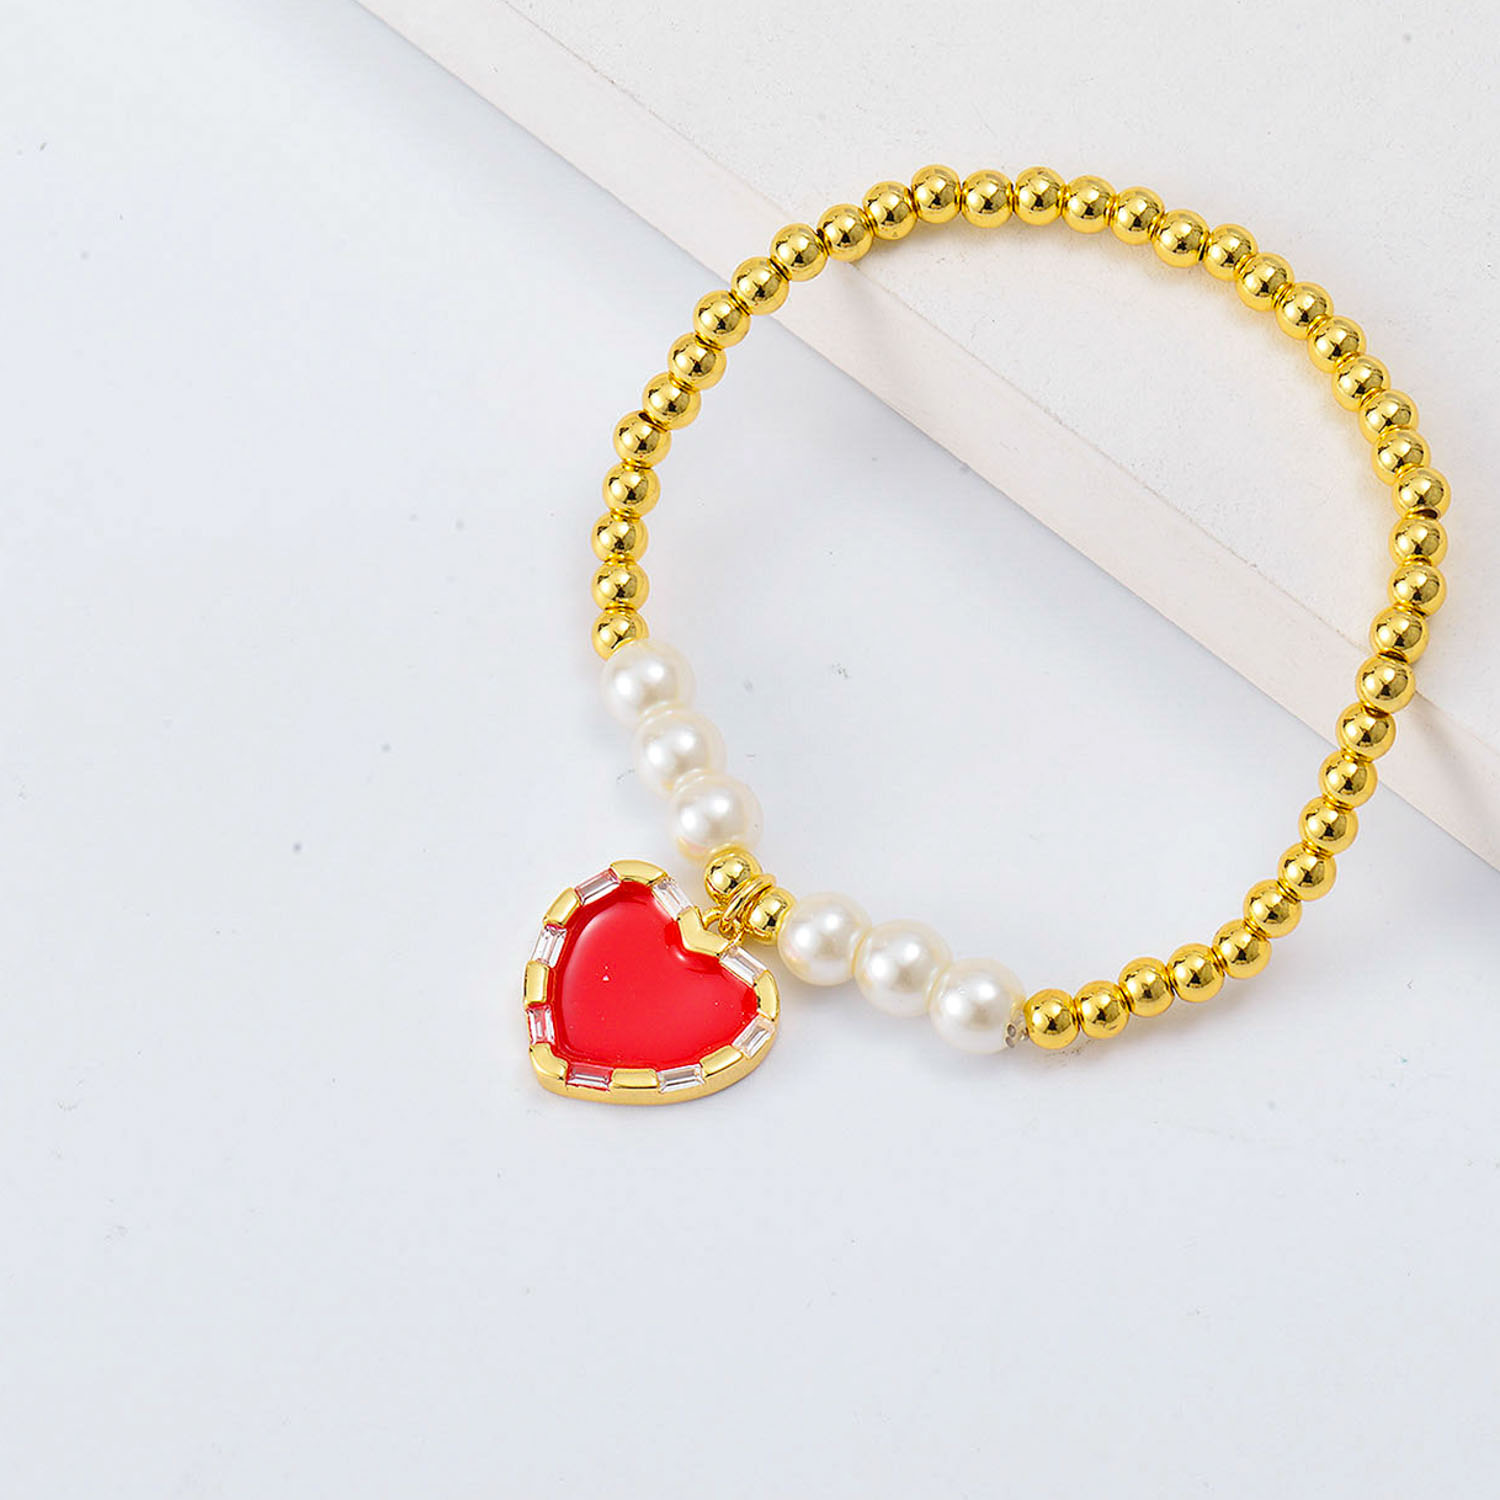 pulseras aesthetic Oro Laminado con Dije de corazon rojo y perlas